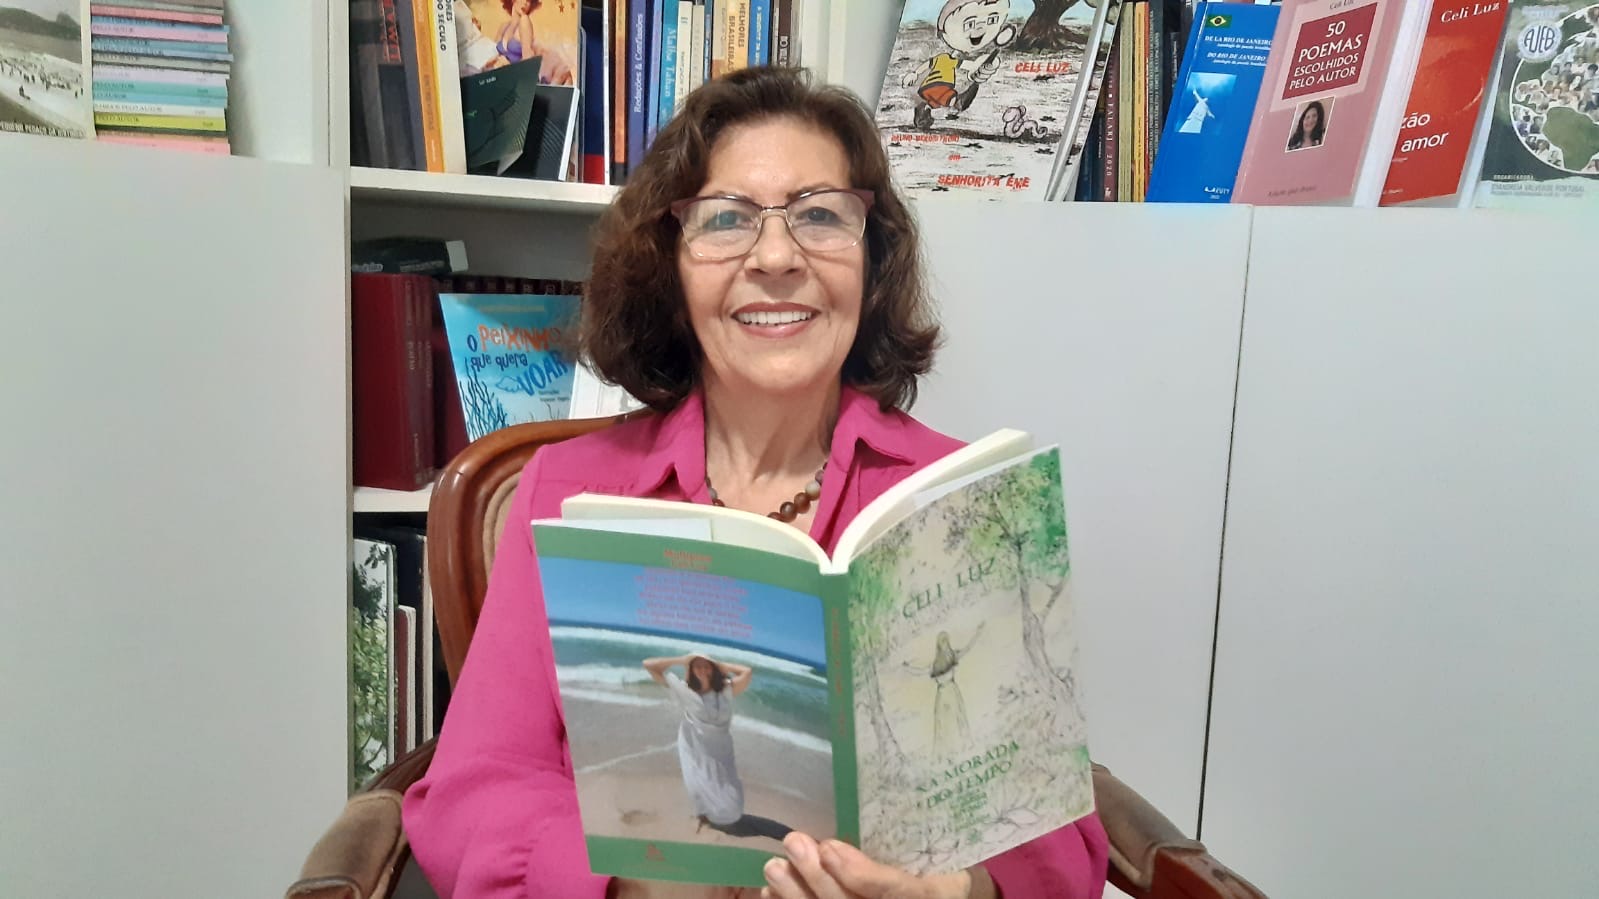 noticia  Celi Luz lança a segunda edição do premiado 'Na Morada do Tempo', com acréscimo de 33 poemas, que envolvem o leitor em seu mundo e tempo.